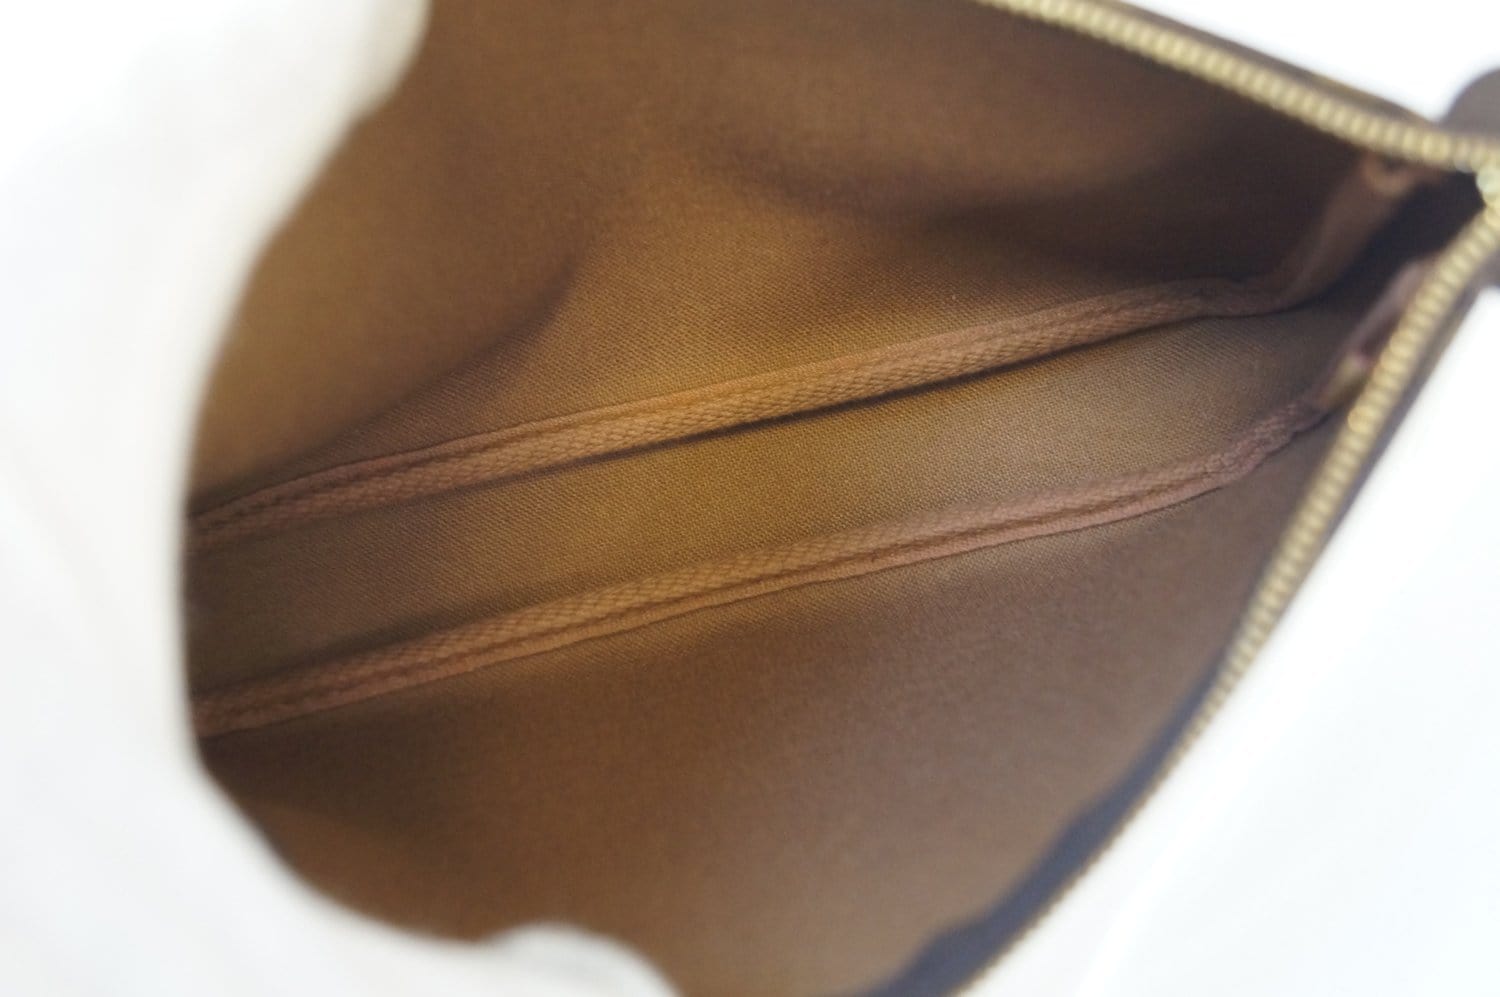 Pochette Accessoires Damier Azur Canvas Evening Bag with Strap – Poshbag  Boutique